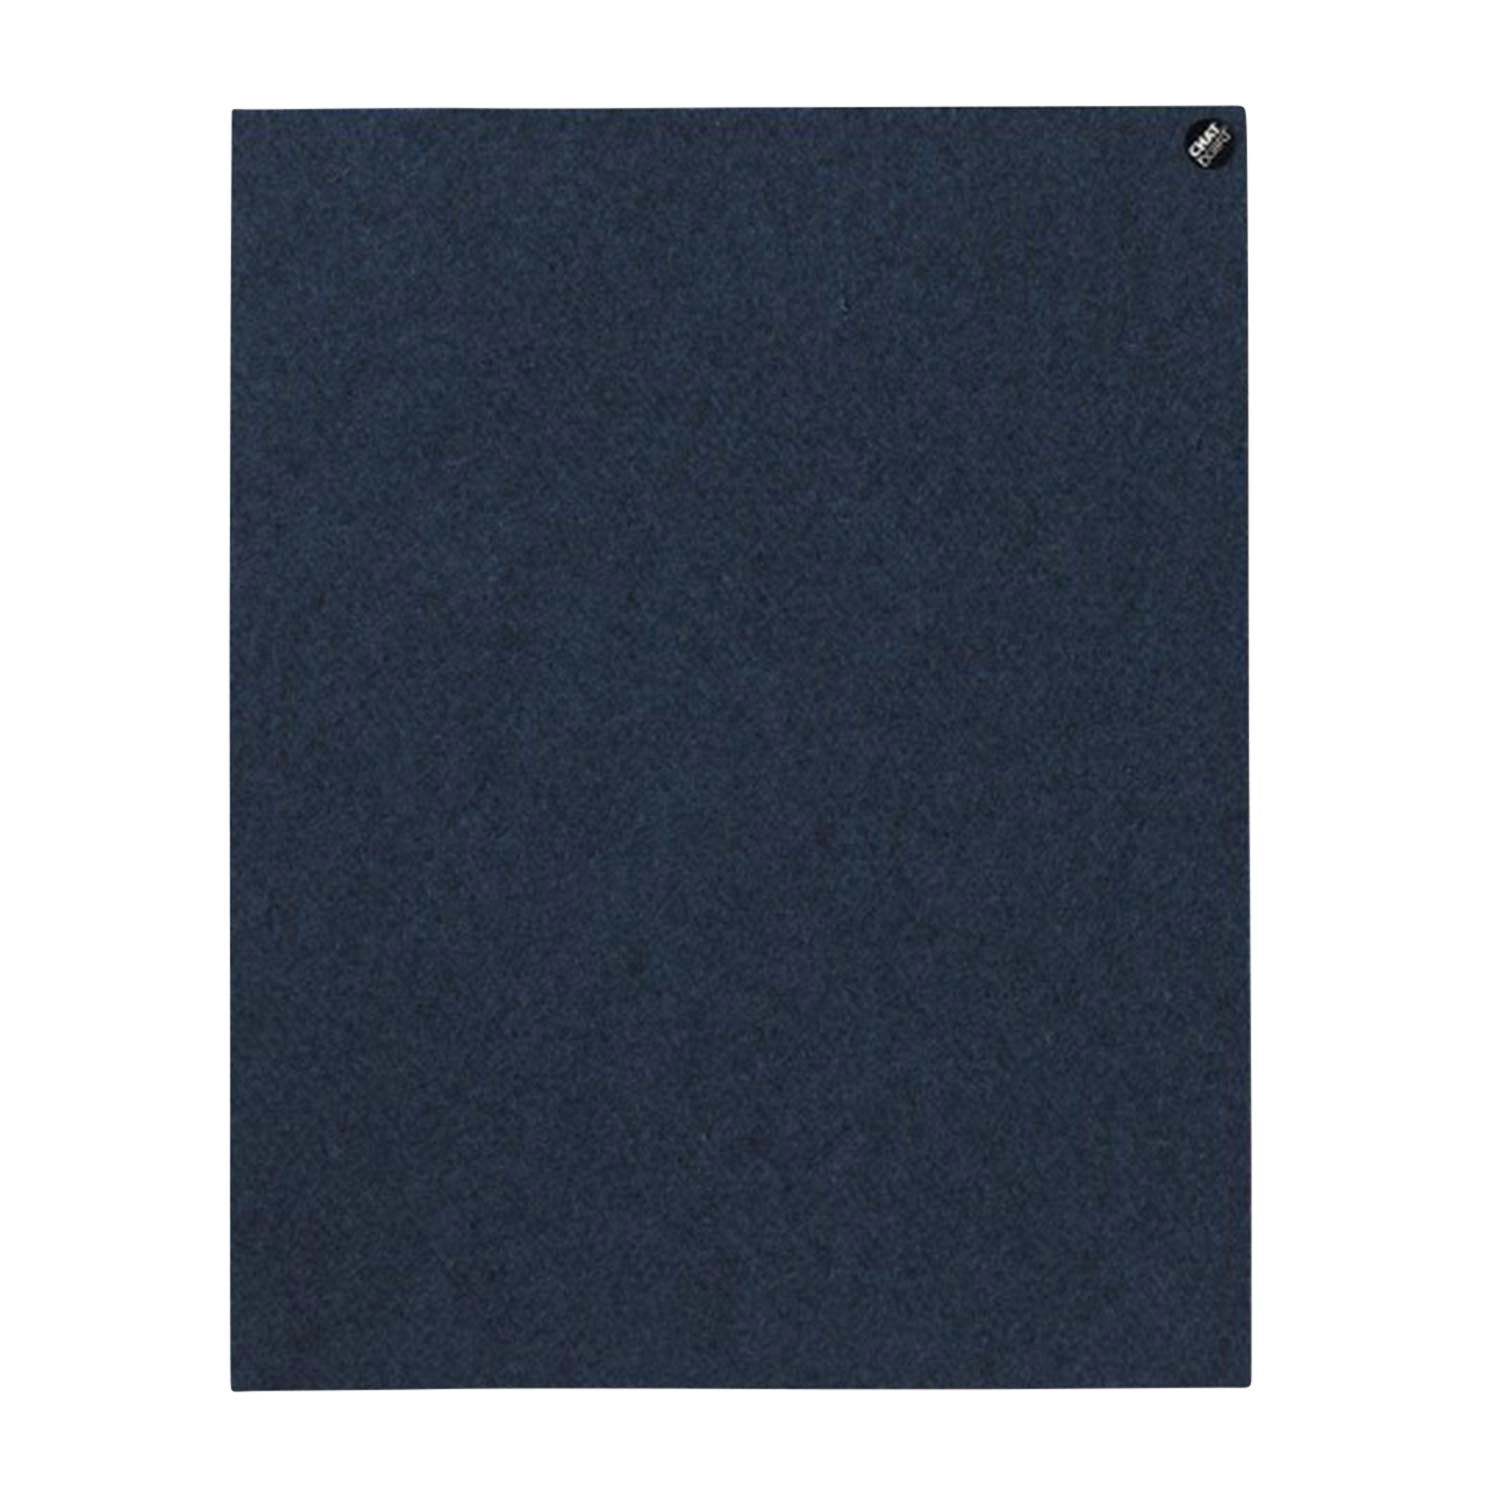 BuzziFelt Pinnwand, Grösse 120 x 58.5 cm, Ausrichtung vertikal, Buzzifelt (Filz) 60 light blue von Chat Board